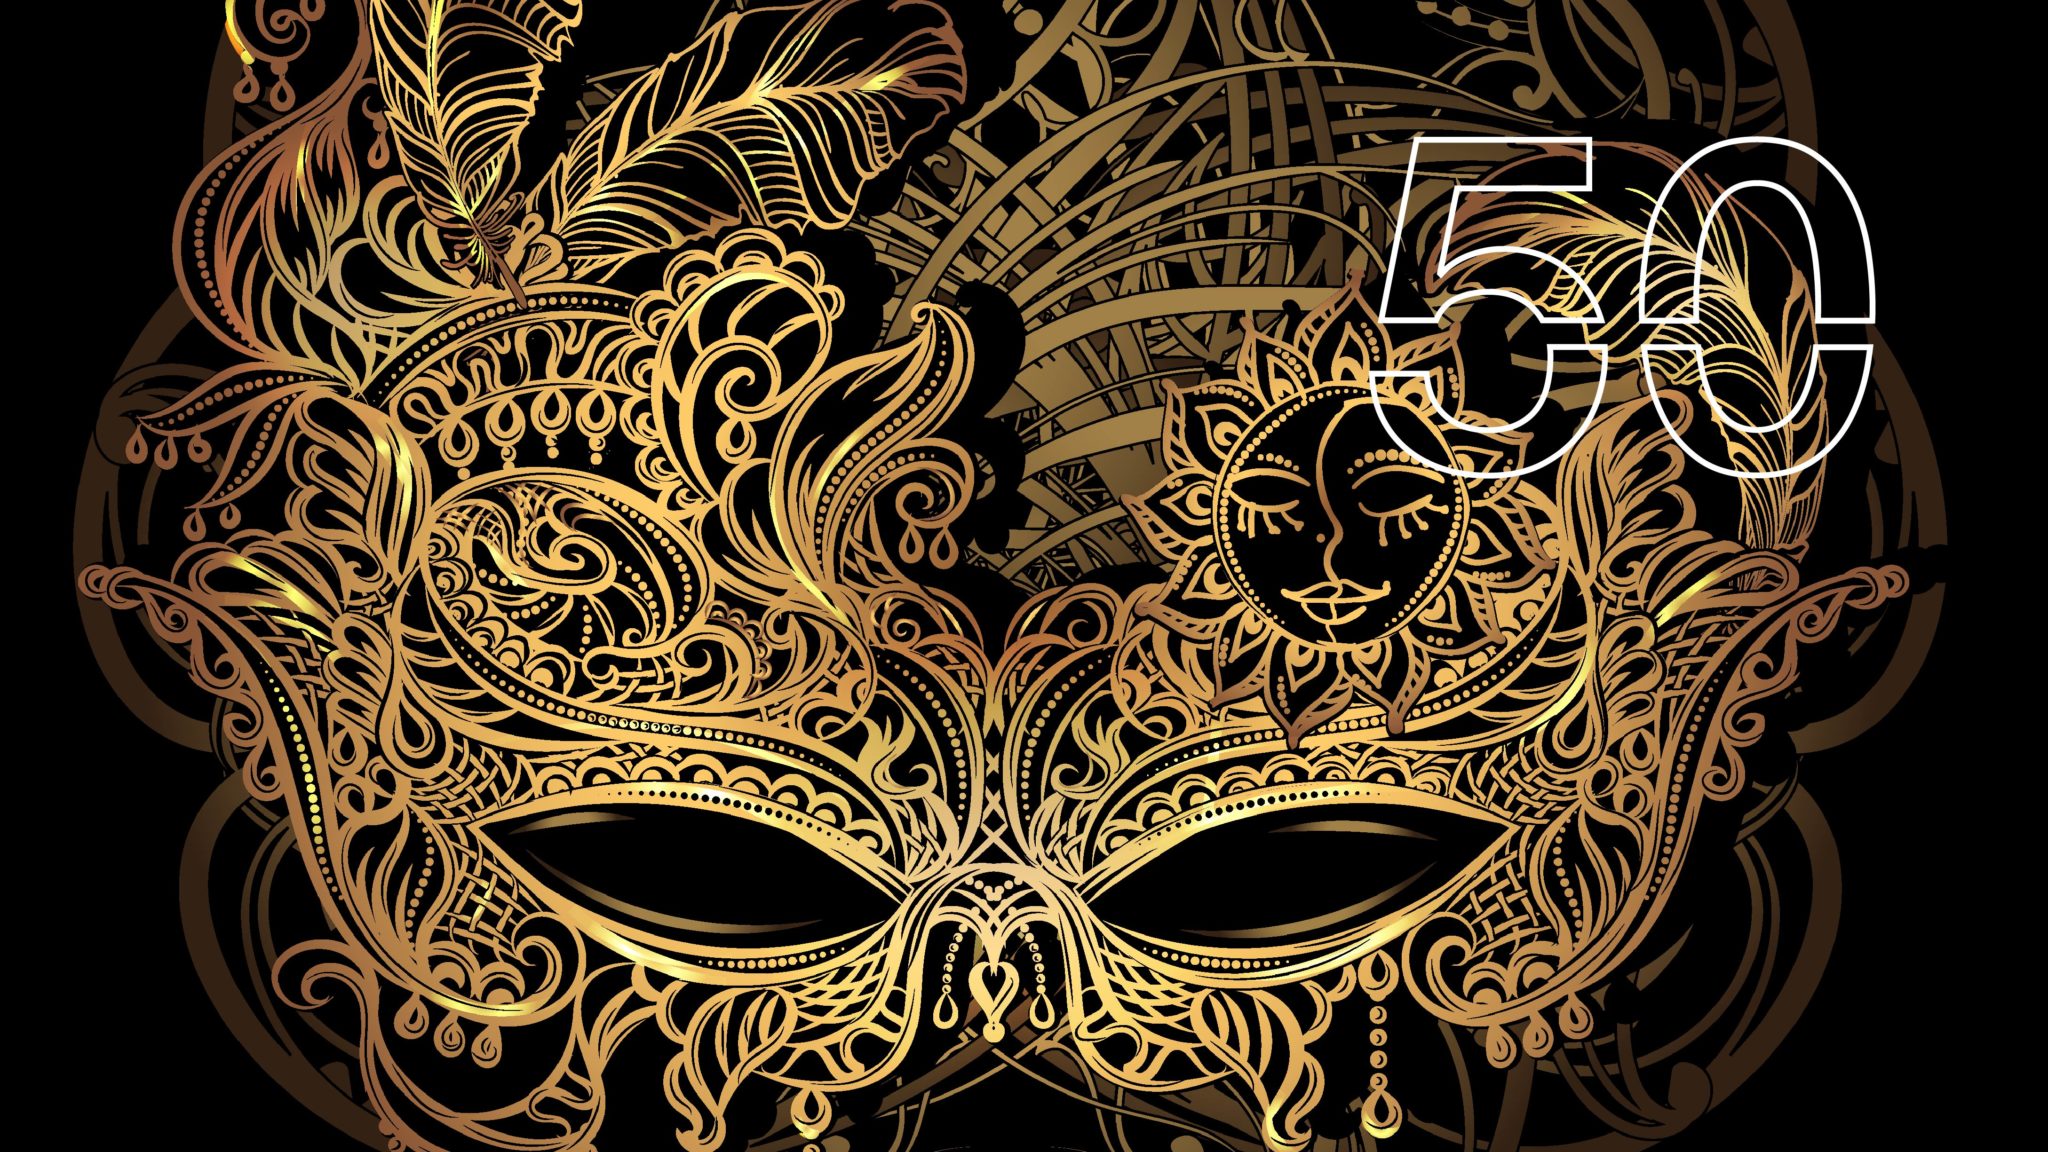 Die Fledermaus at RNCM artwork, a golden eye mask on black background